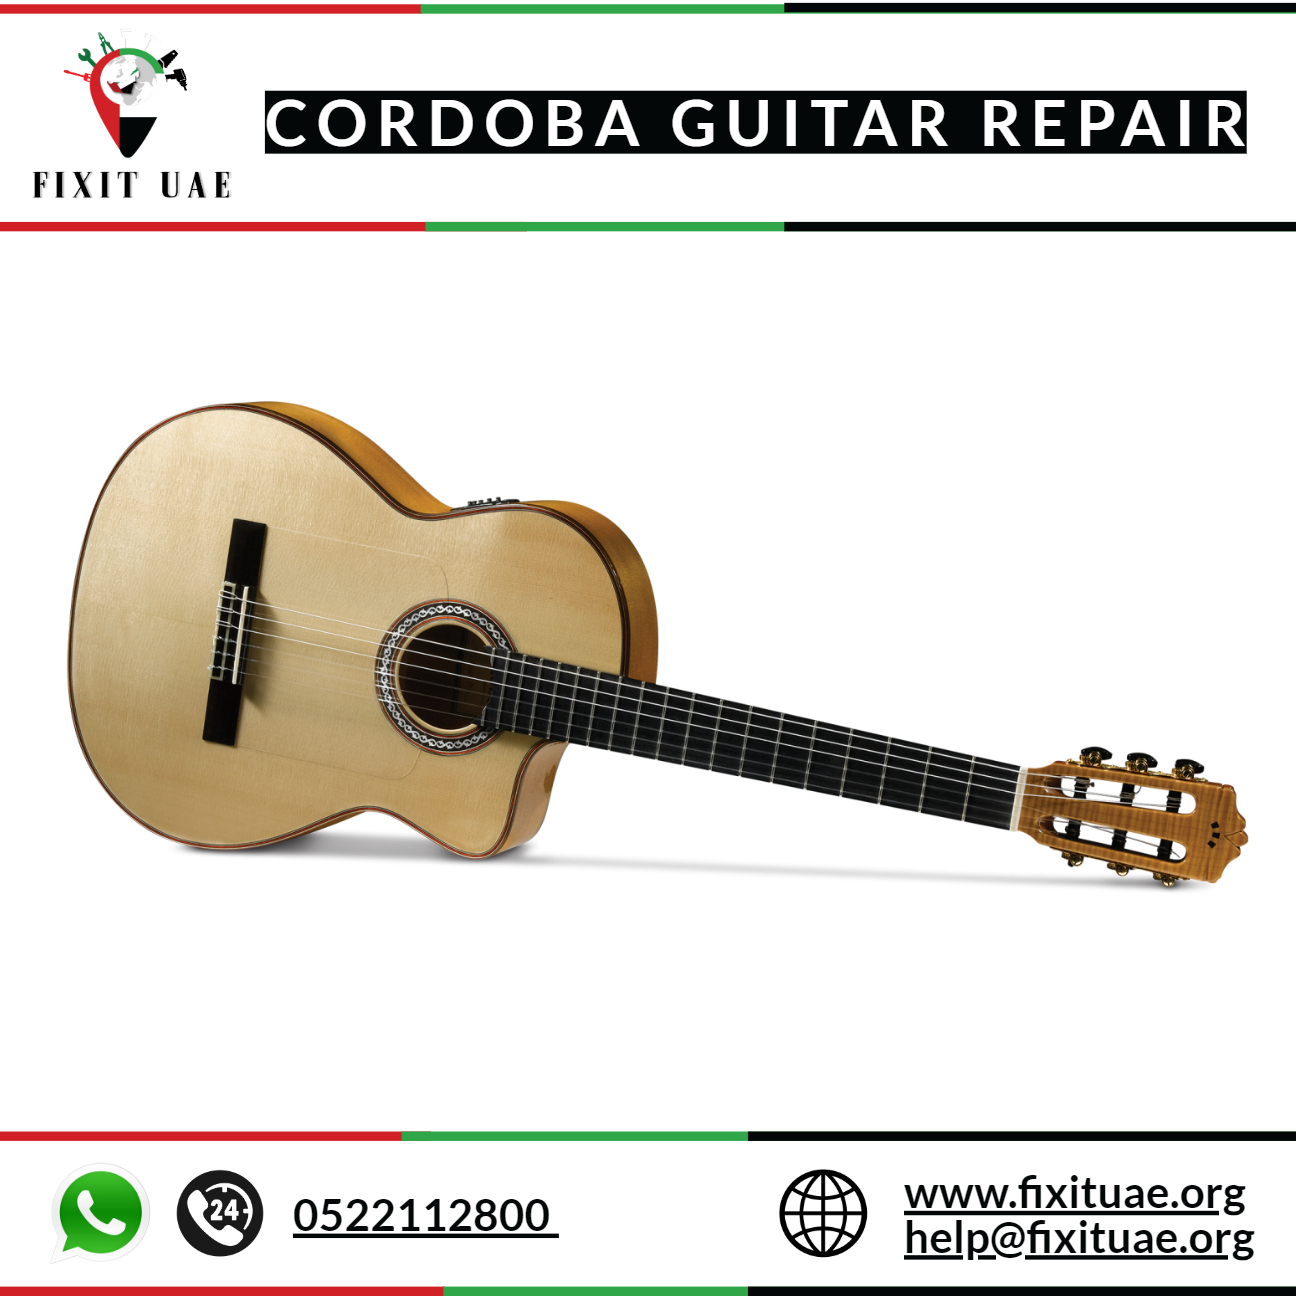 Cordoba guitar repair